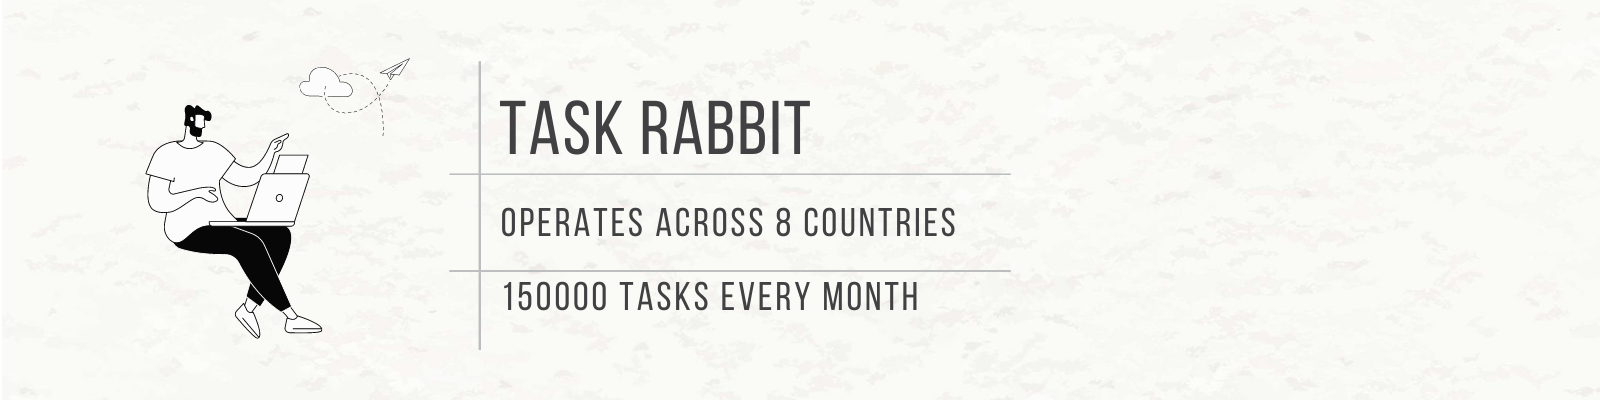 task rabbit banner 